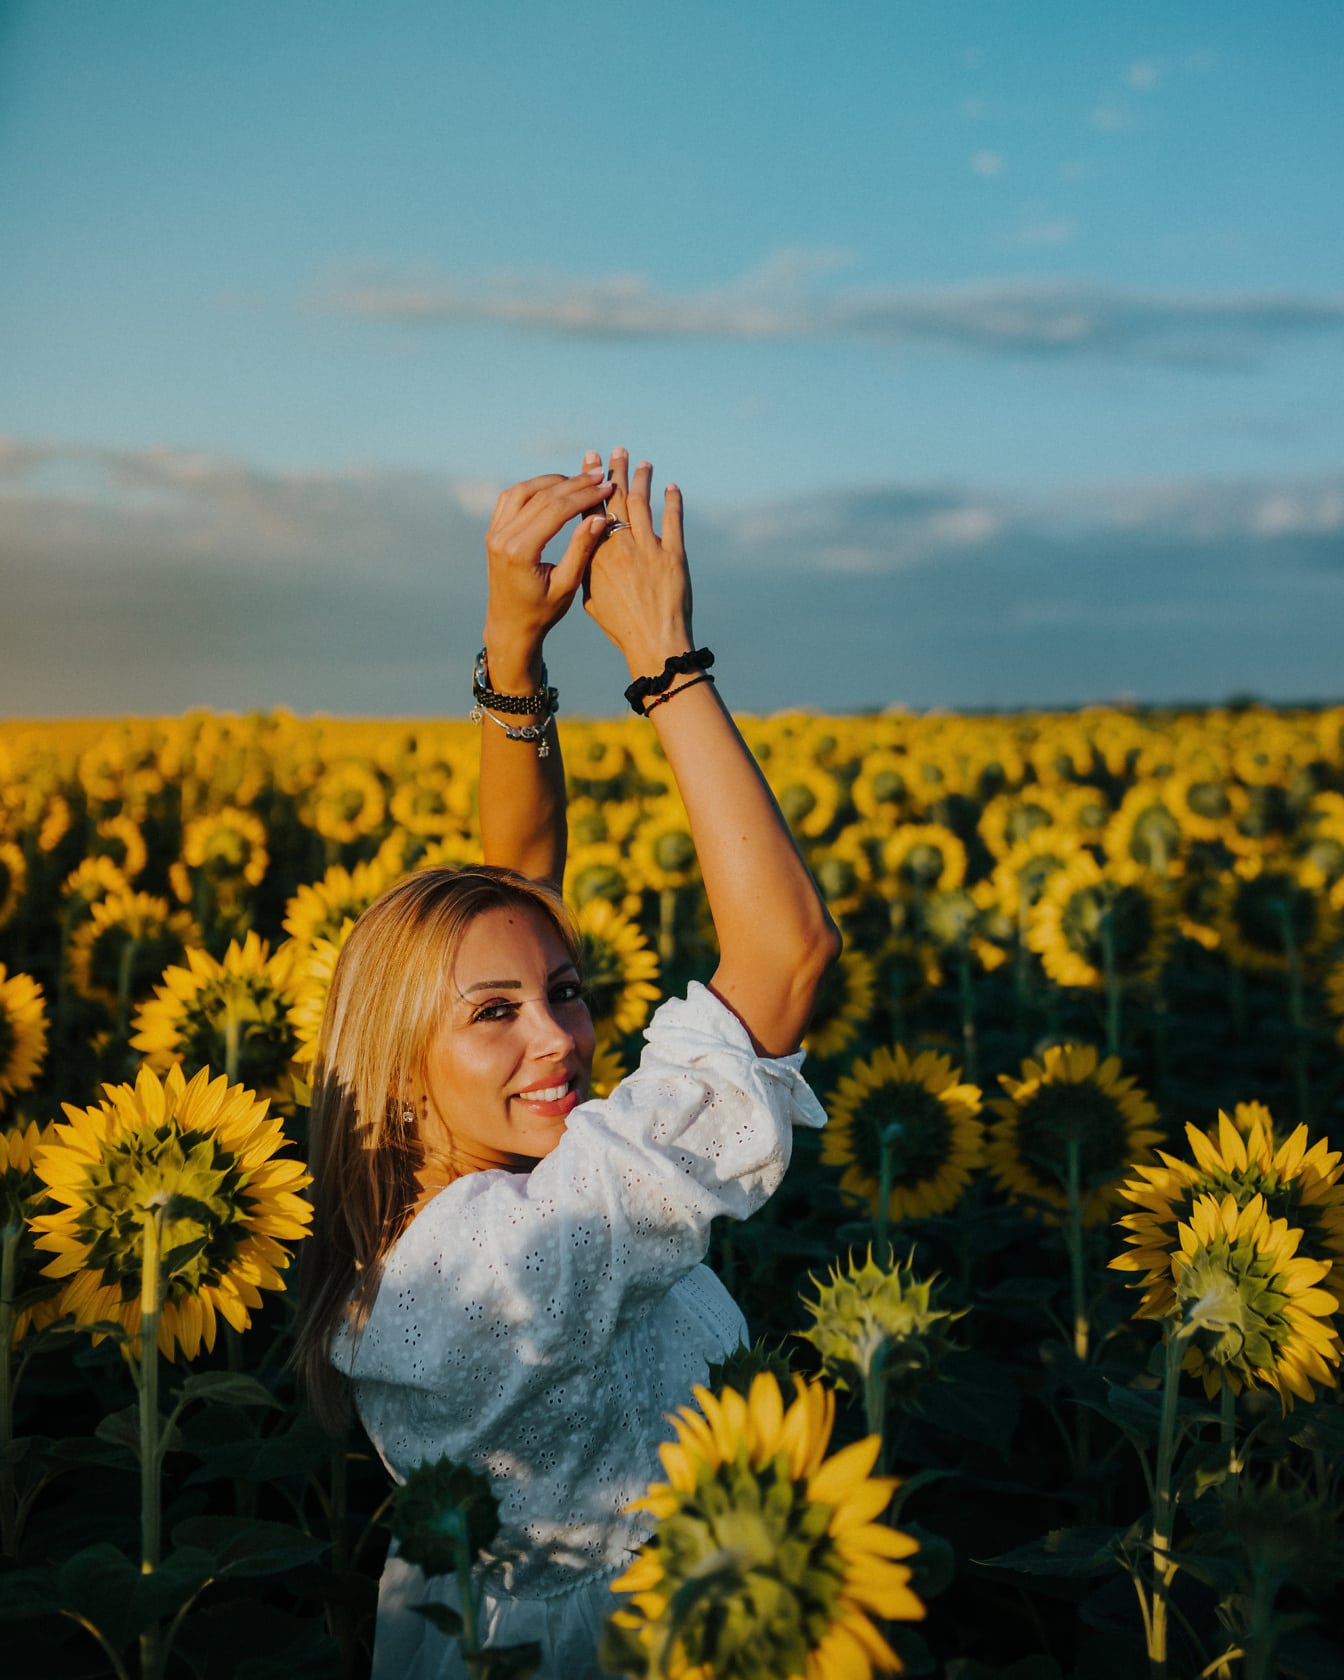 Iloisen upea vaalea nuori nainen auringonkukkaniityllä kädet ylhäällä ilmassa